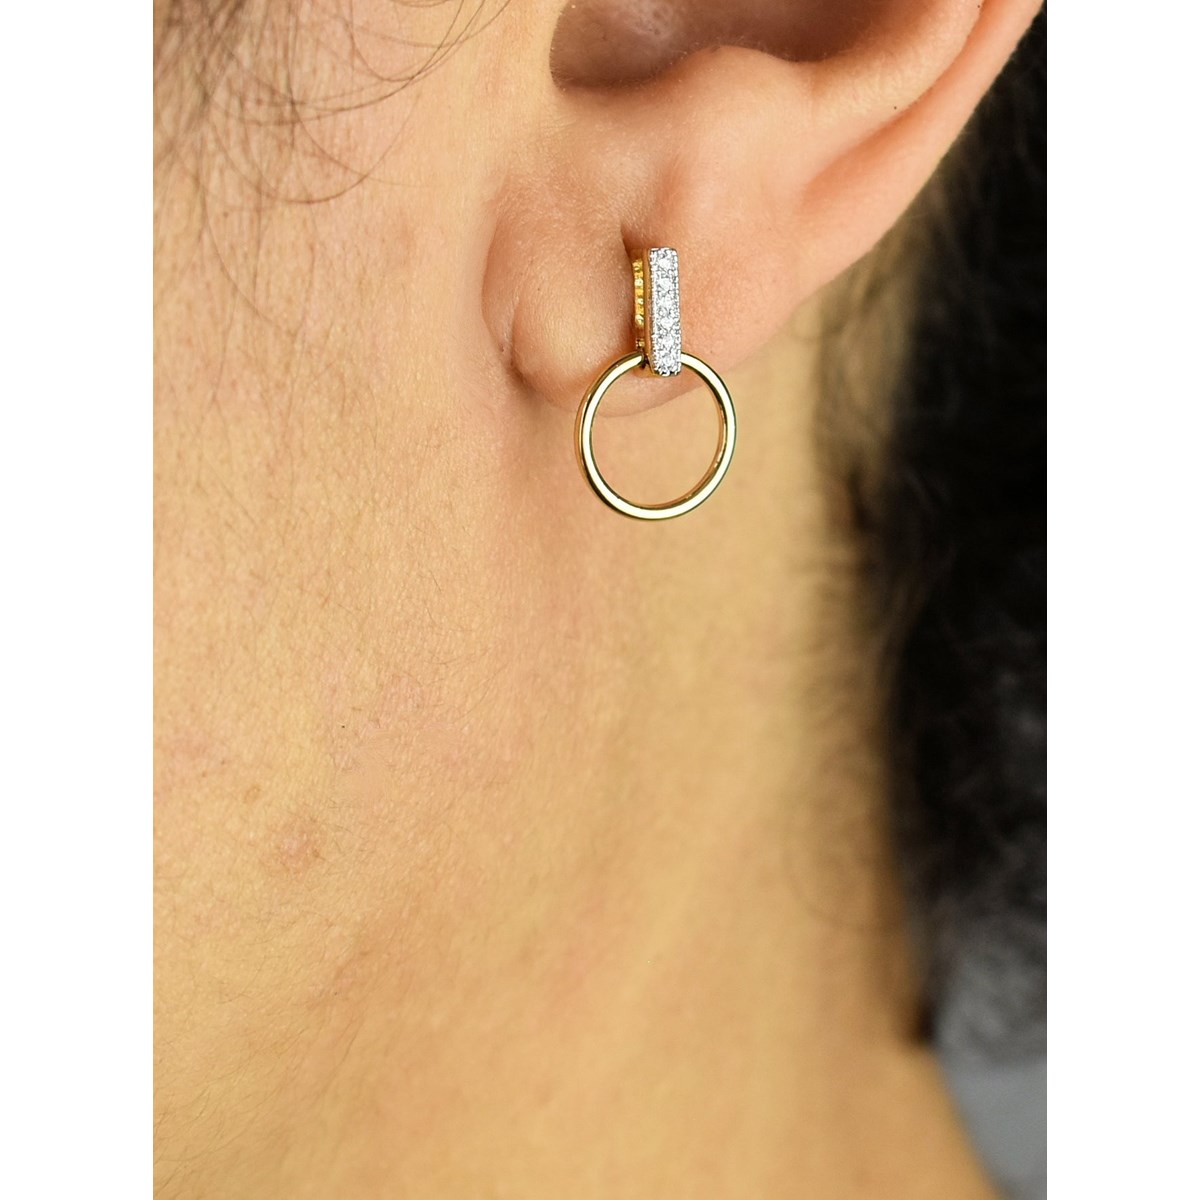 Boucles d'oreilles cercle barre sertie d'oxydes de zirconium Plaqué or 750 3 microns 2 tons - vue 2